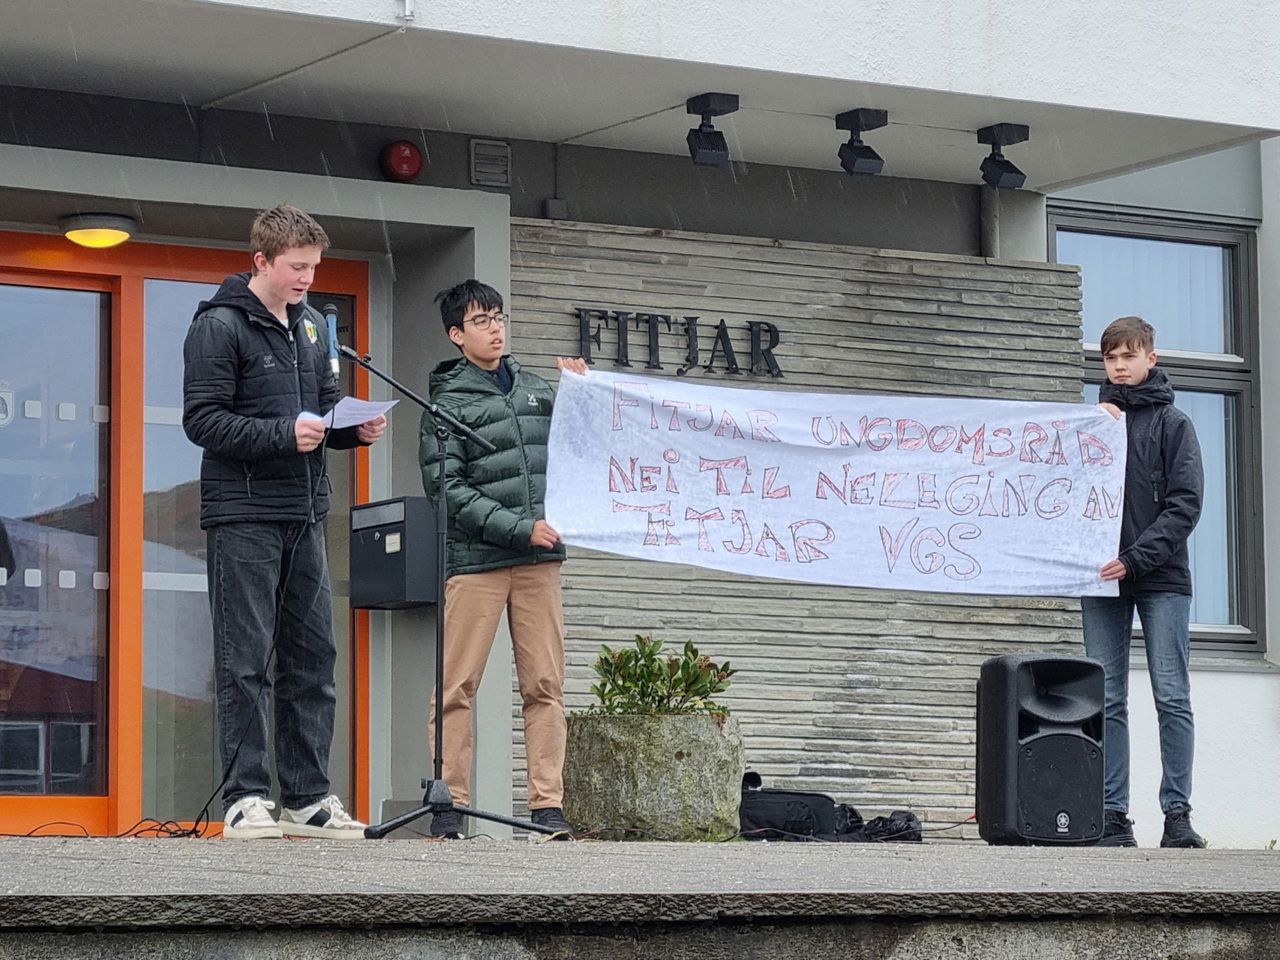 Ein ungdom som held ein tale framfor ein mikrofon. Attmed står det to andre ungdommer og held i eit banner der det står "Fitjar ungdomsråd. Nei til nedlegging av Fitjar vgs"